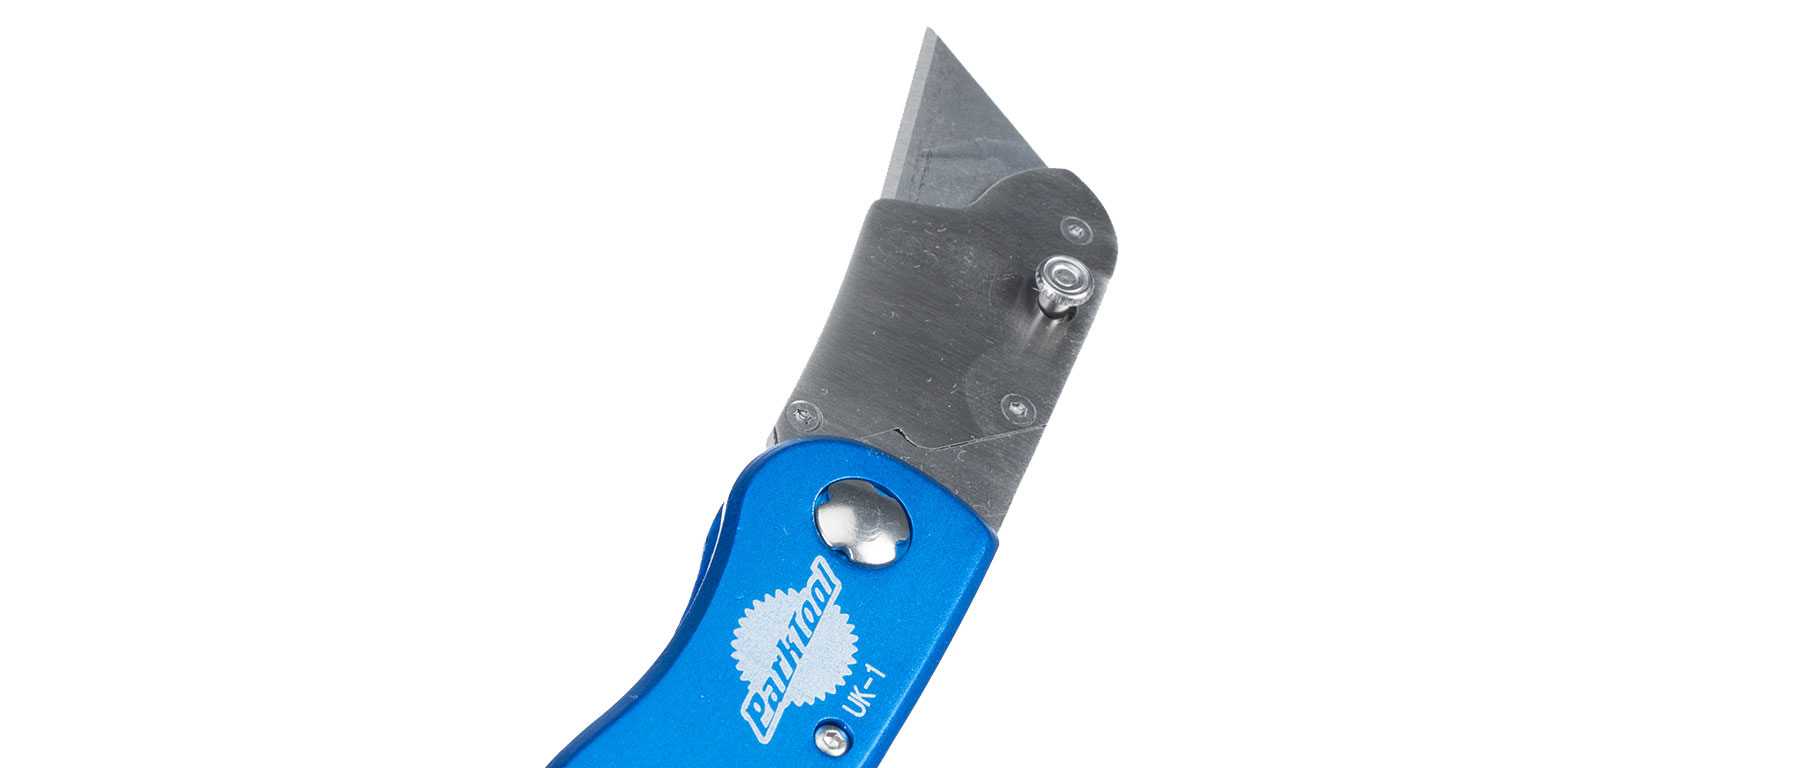 Park Tool UK-1 Utility Knife